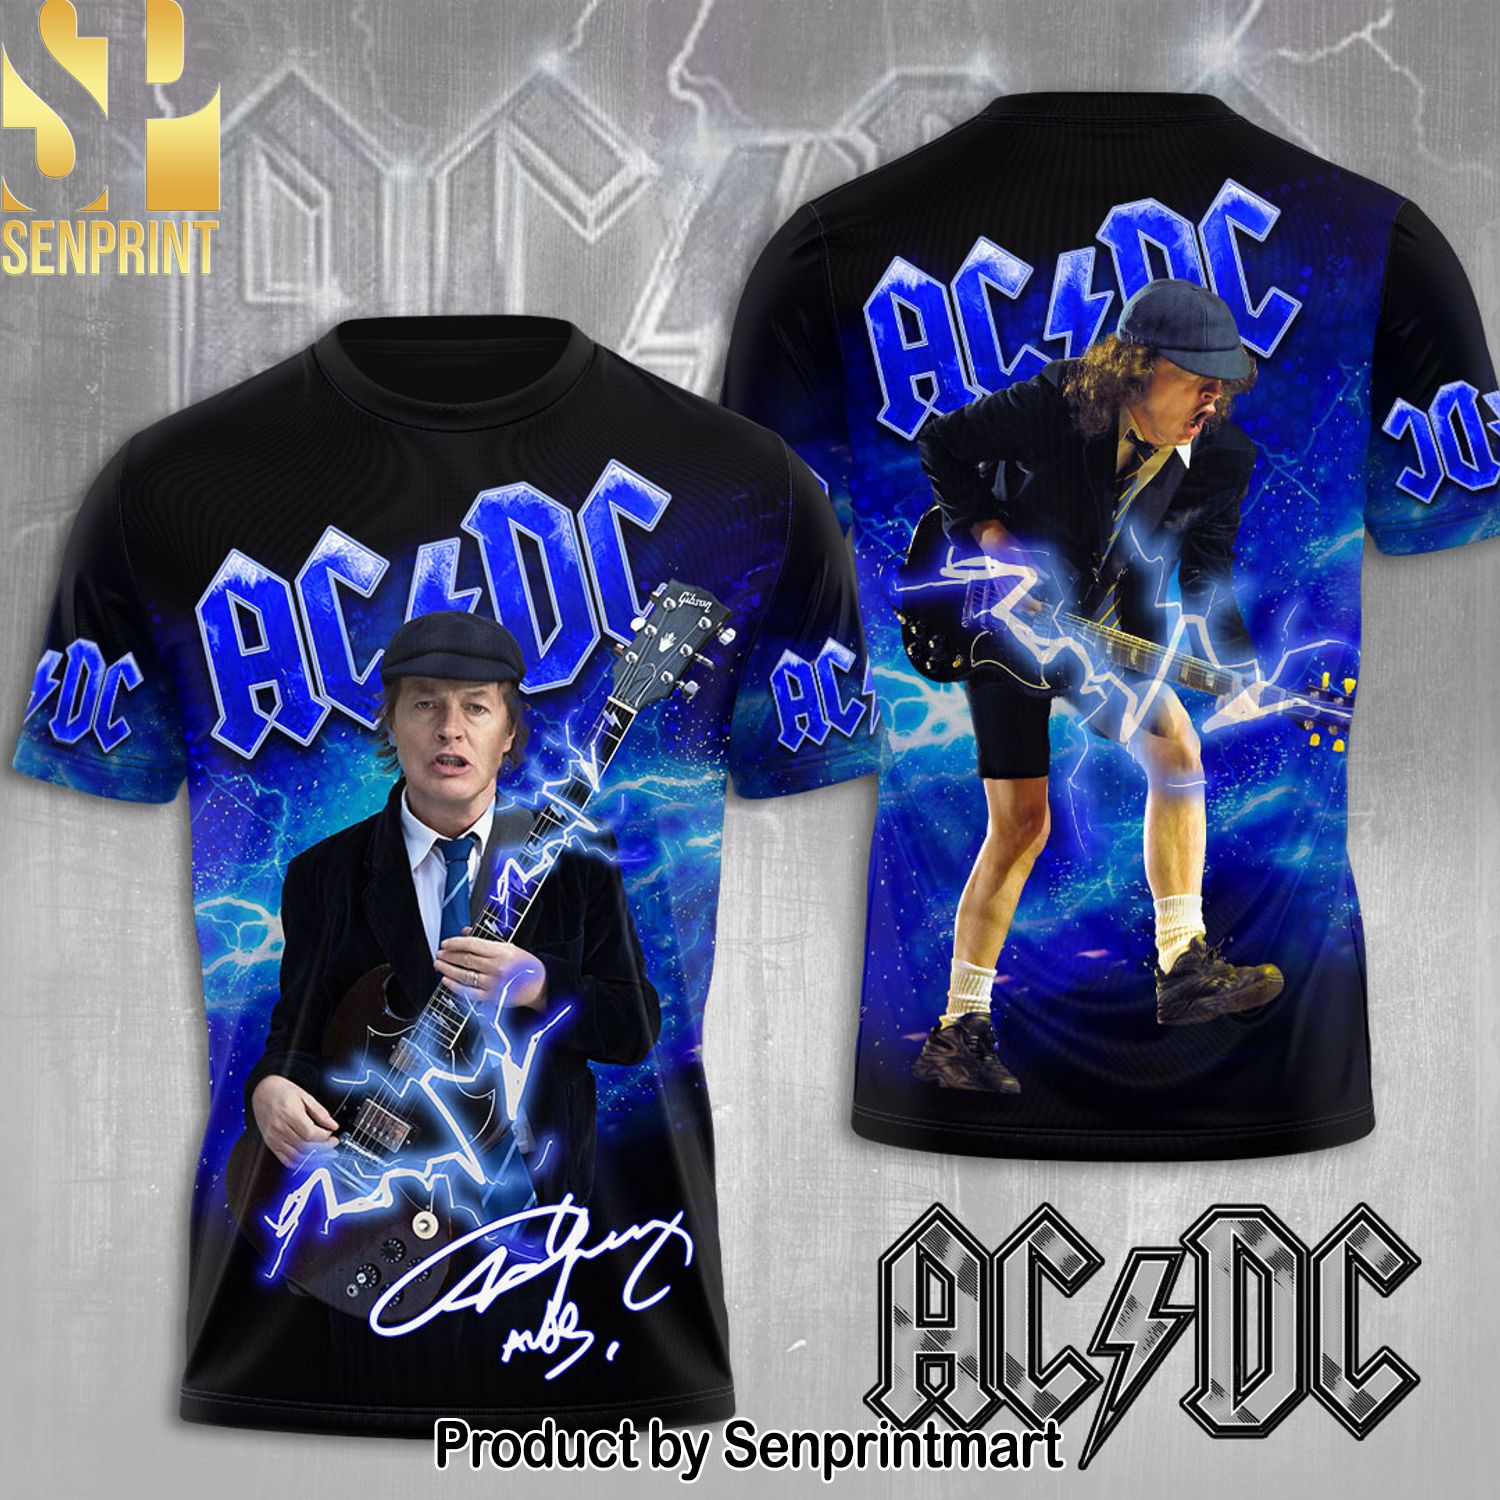 AC DC x Angus Young Full Printing Shirt – SEN0122